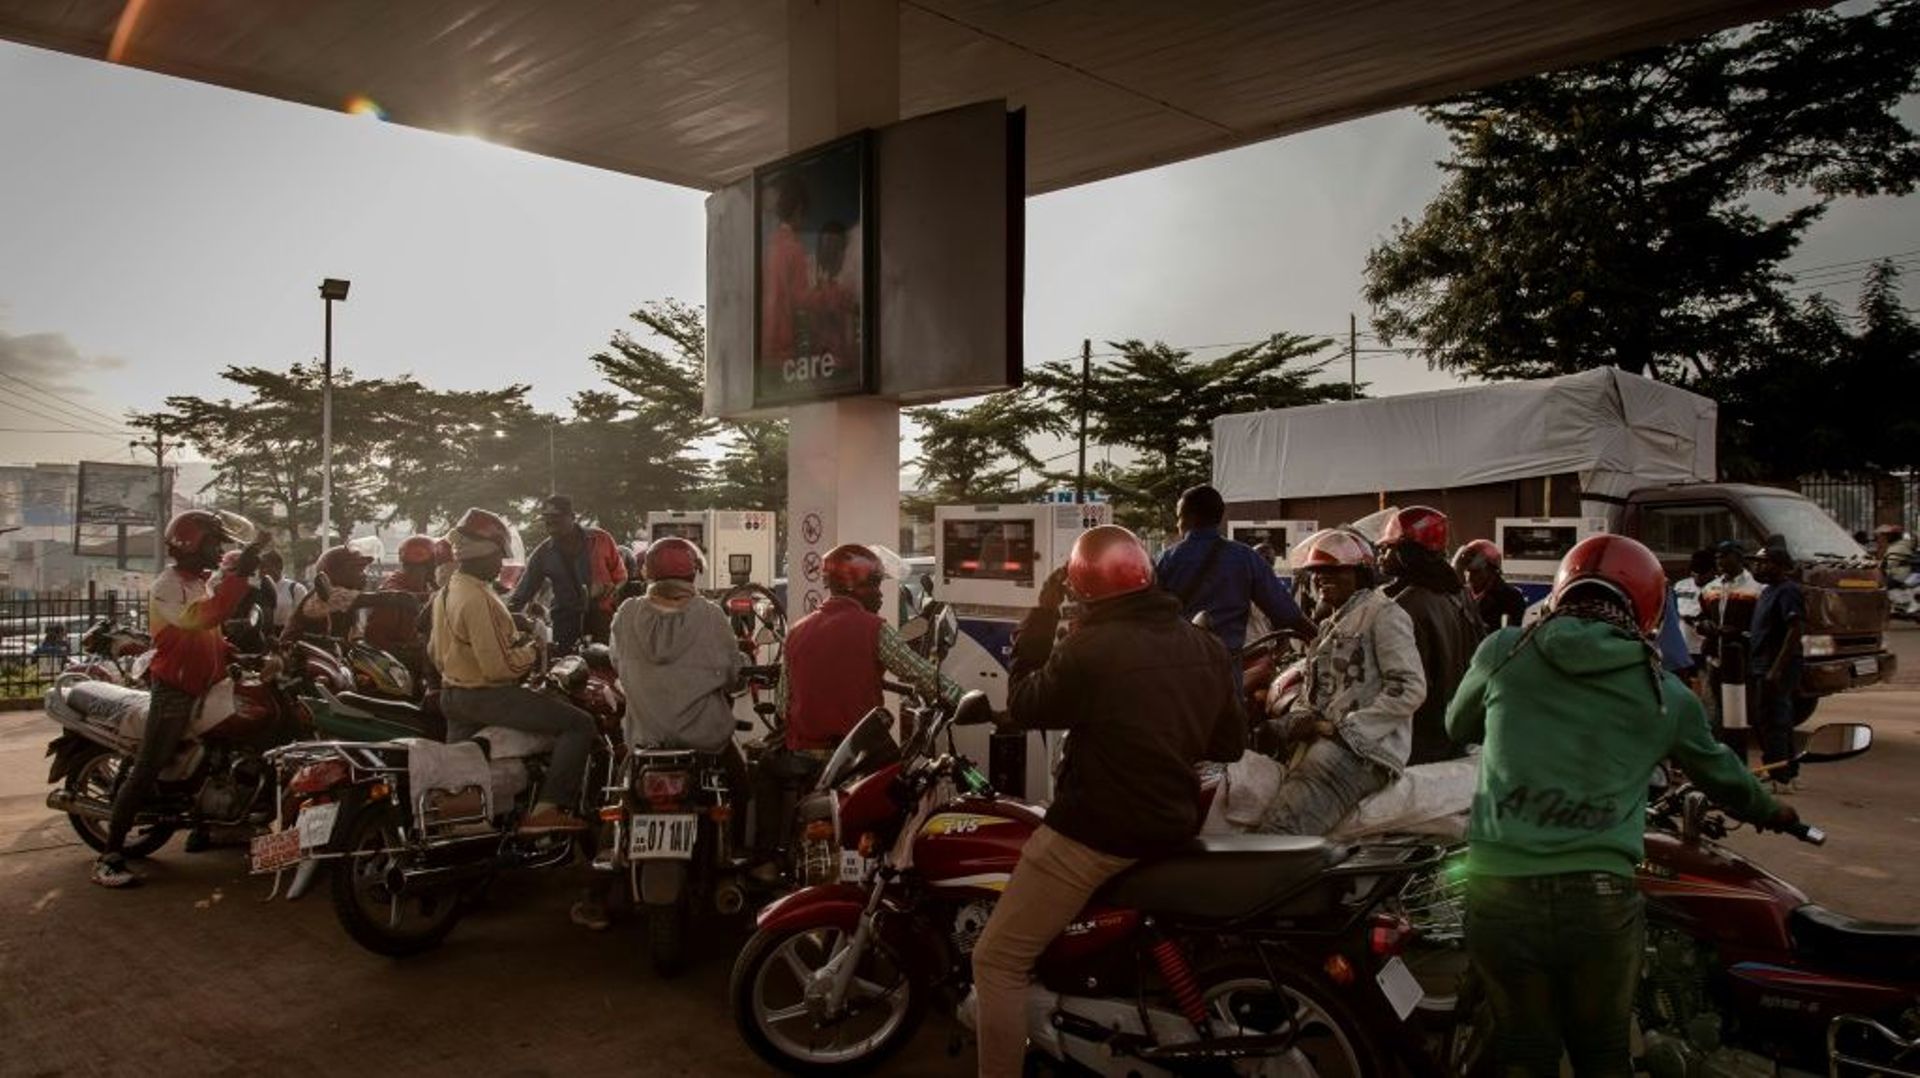 Des motocyclistes se pressent dès le matin dans la seule station-service de Bukavu qui n’a pas augmenté ses prix, le 16 mars 2022